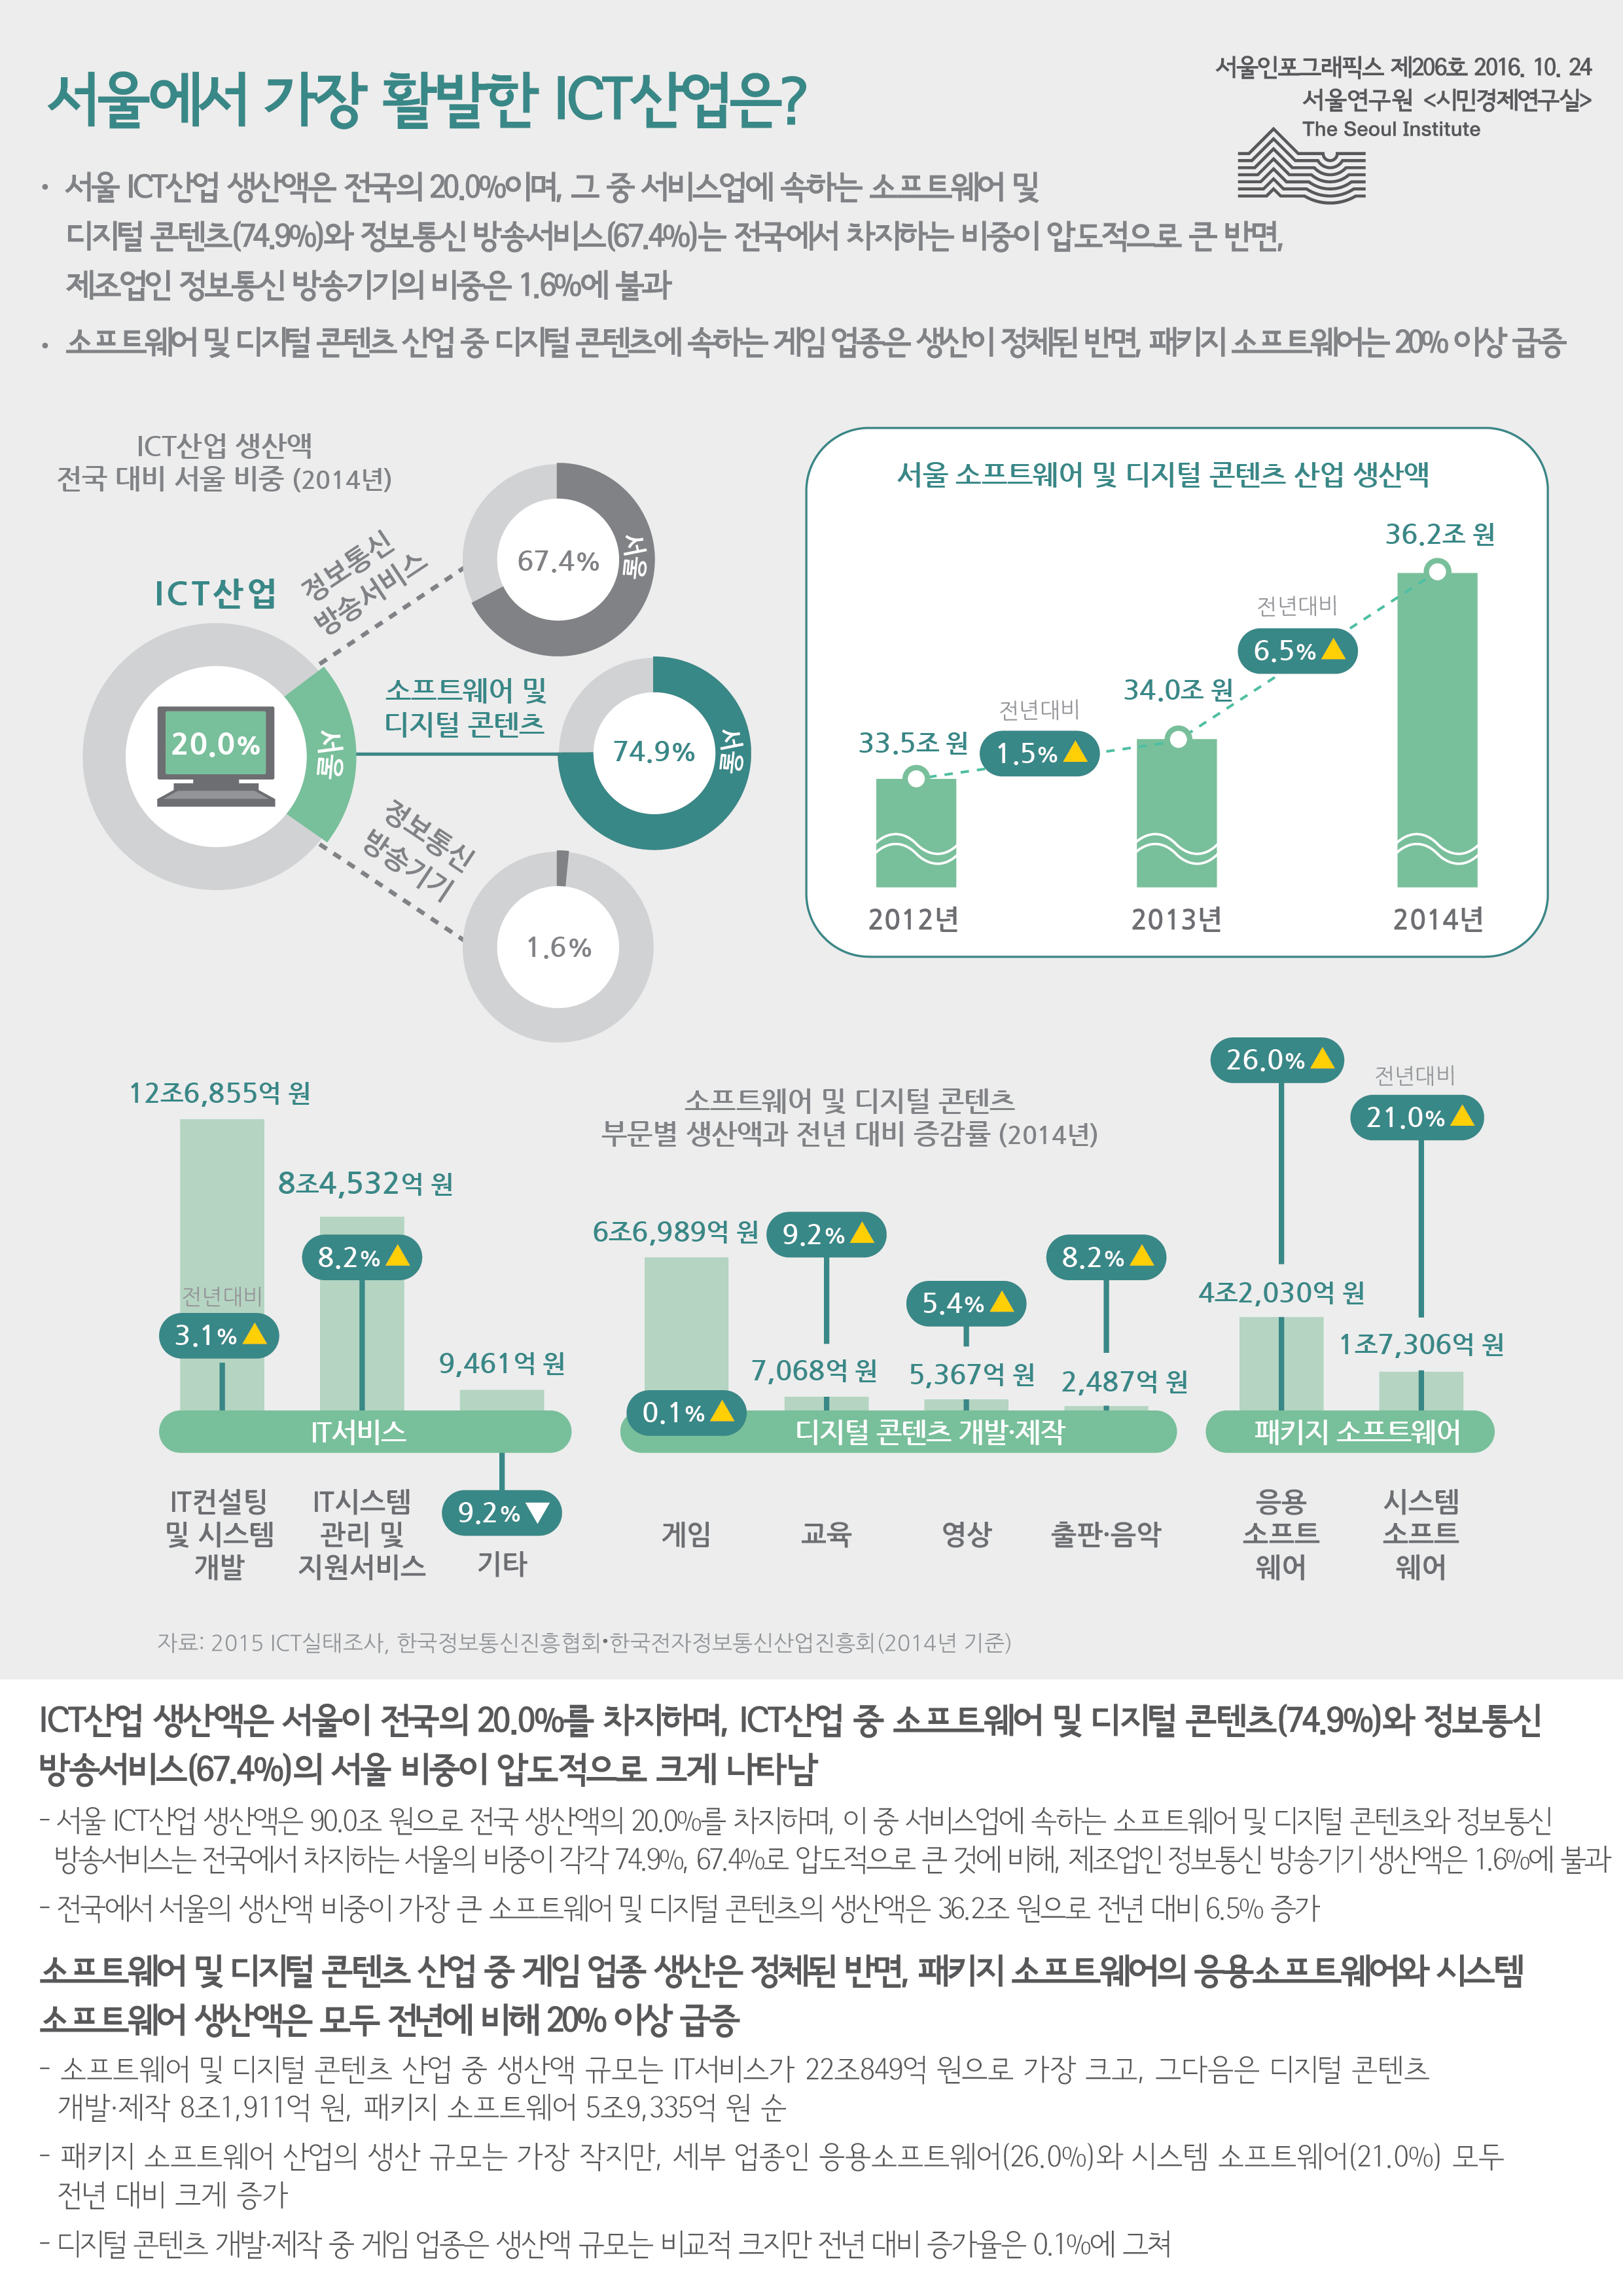 서울에서 가장 활발한 ICT산업은? 서울인포그래픽스 제206호 2016년 10월 24일 서울 ICT산업 생산액은 전국의 20.0%이며, 그 중 서비스업에 속하는 소프트웨어 및 디지털 콘텐츠(74.9%)와 정보통신 방송서비스(67.4%)는 전국에서 차지하는 비중이 압도적으로 큰 반면, 제조업인 정보통신 방송기기의 비중은 1.6%에 불과. 소프트웨어 및 디지털 콘텐츠 산업 중 디지털 콘텐츠에 속하는 게임 업종은 생산이 정체된 반면, 패키지 소프트웨어는 20% 이상 급증함으로 정리 될 수 있습니다. 인포그래픽으로 제공되는 그래픽은 하단에 표로 자세히 제공됩니다.